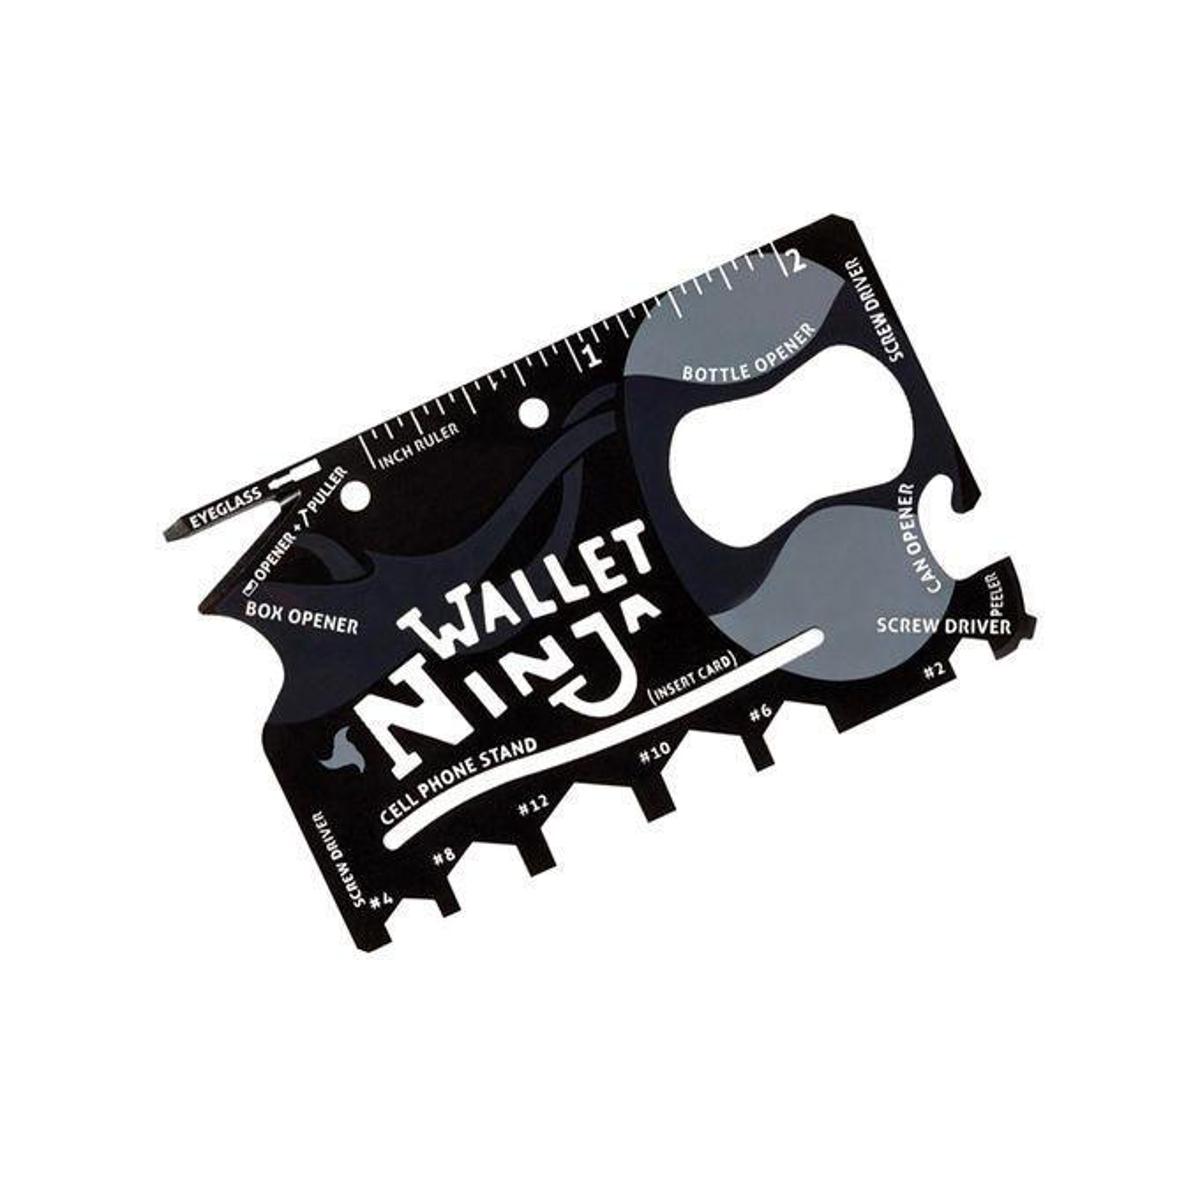 Wallet Ninja 18-In-1Tool Steel Pocket Screwdriver Bottle Opener Gadget